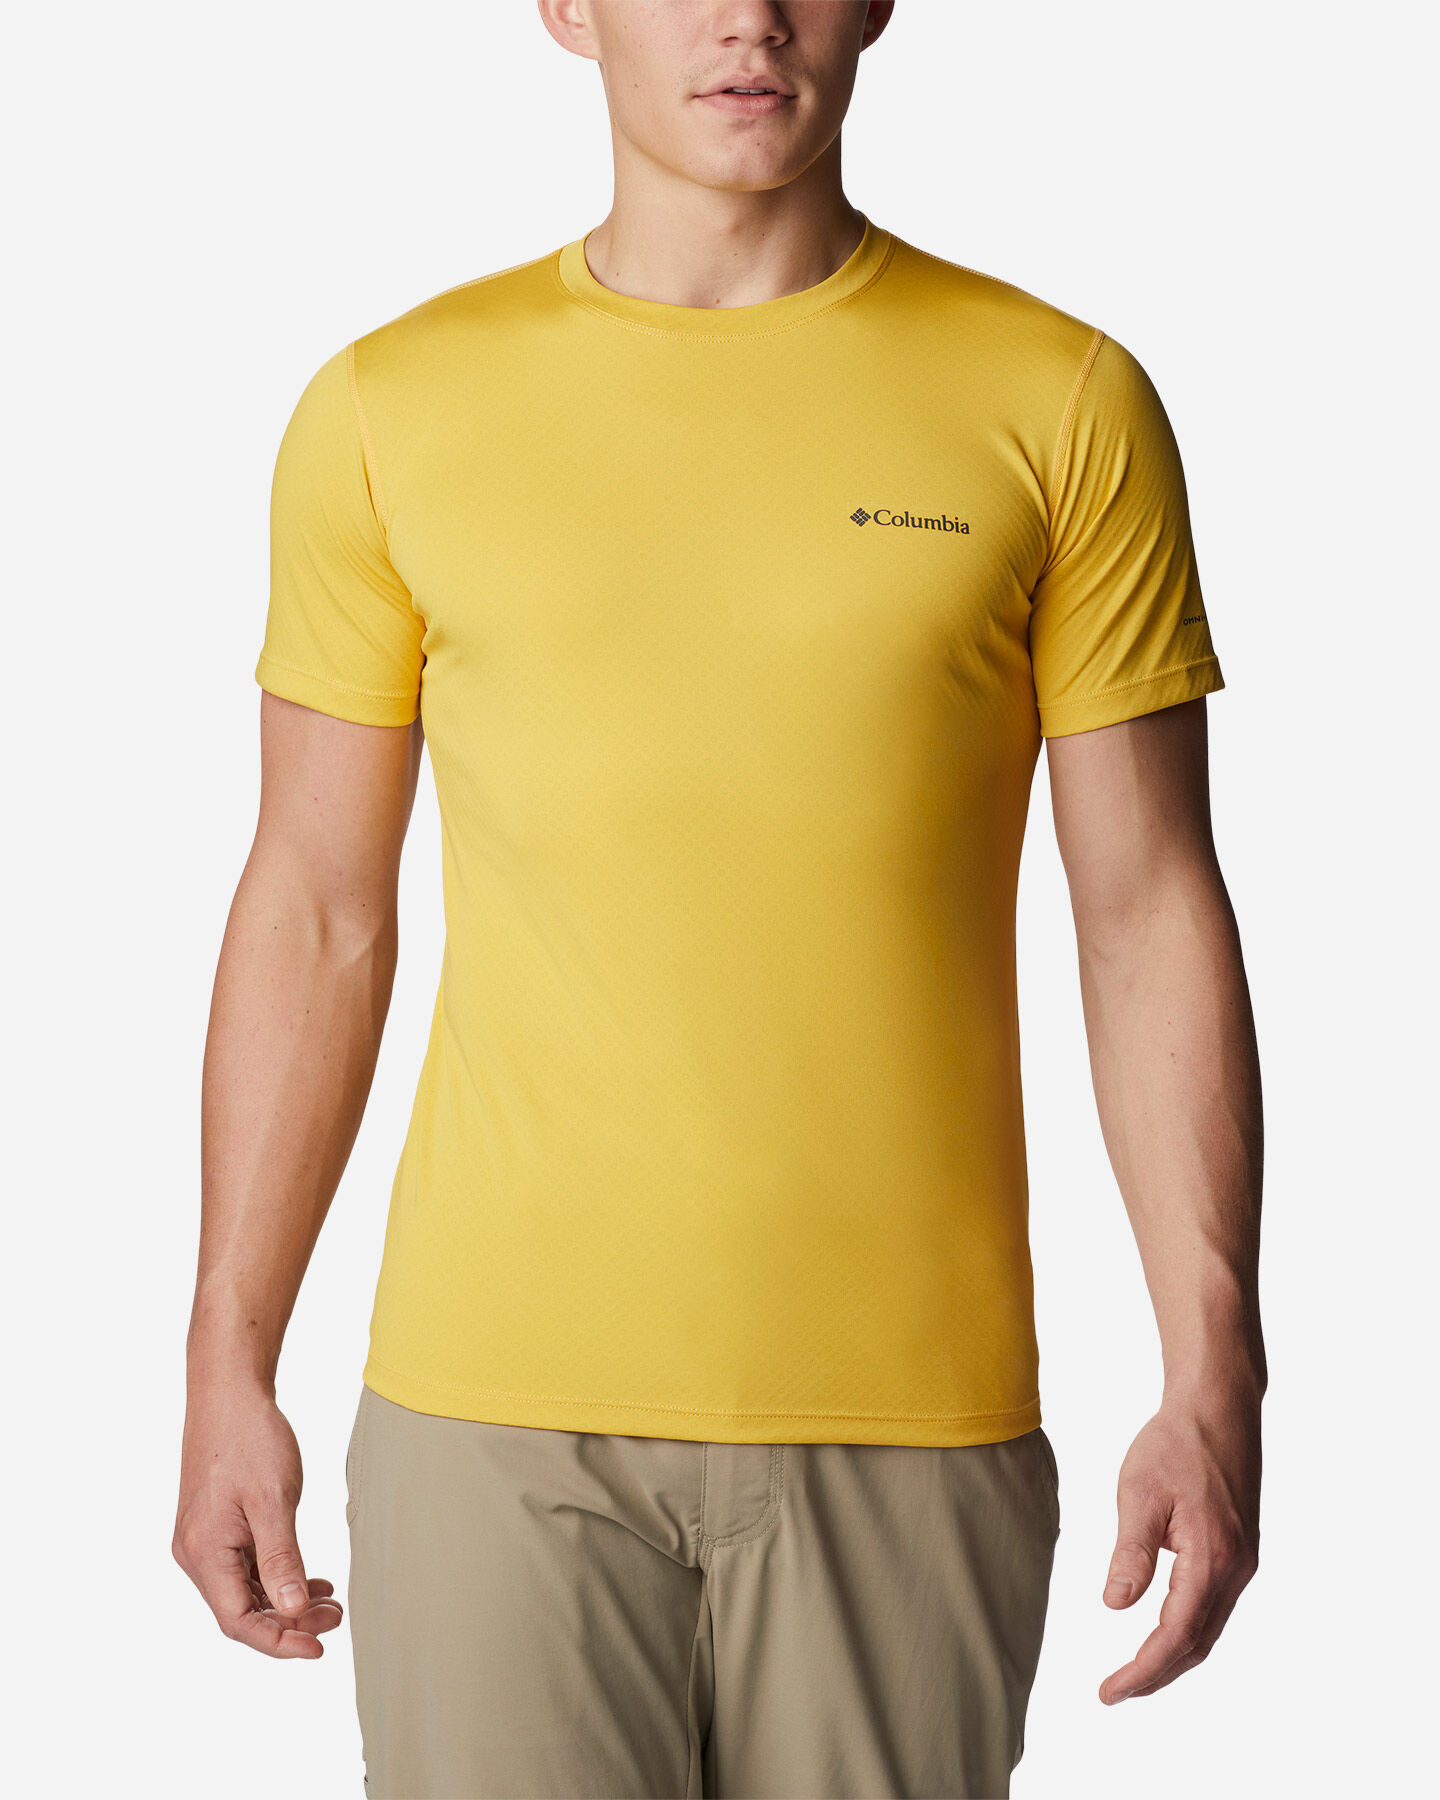  T-Shirt COLUMBIA ZERO RULES M S5552718 scatto 0